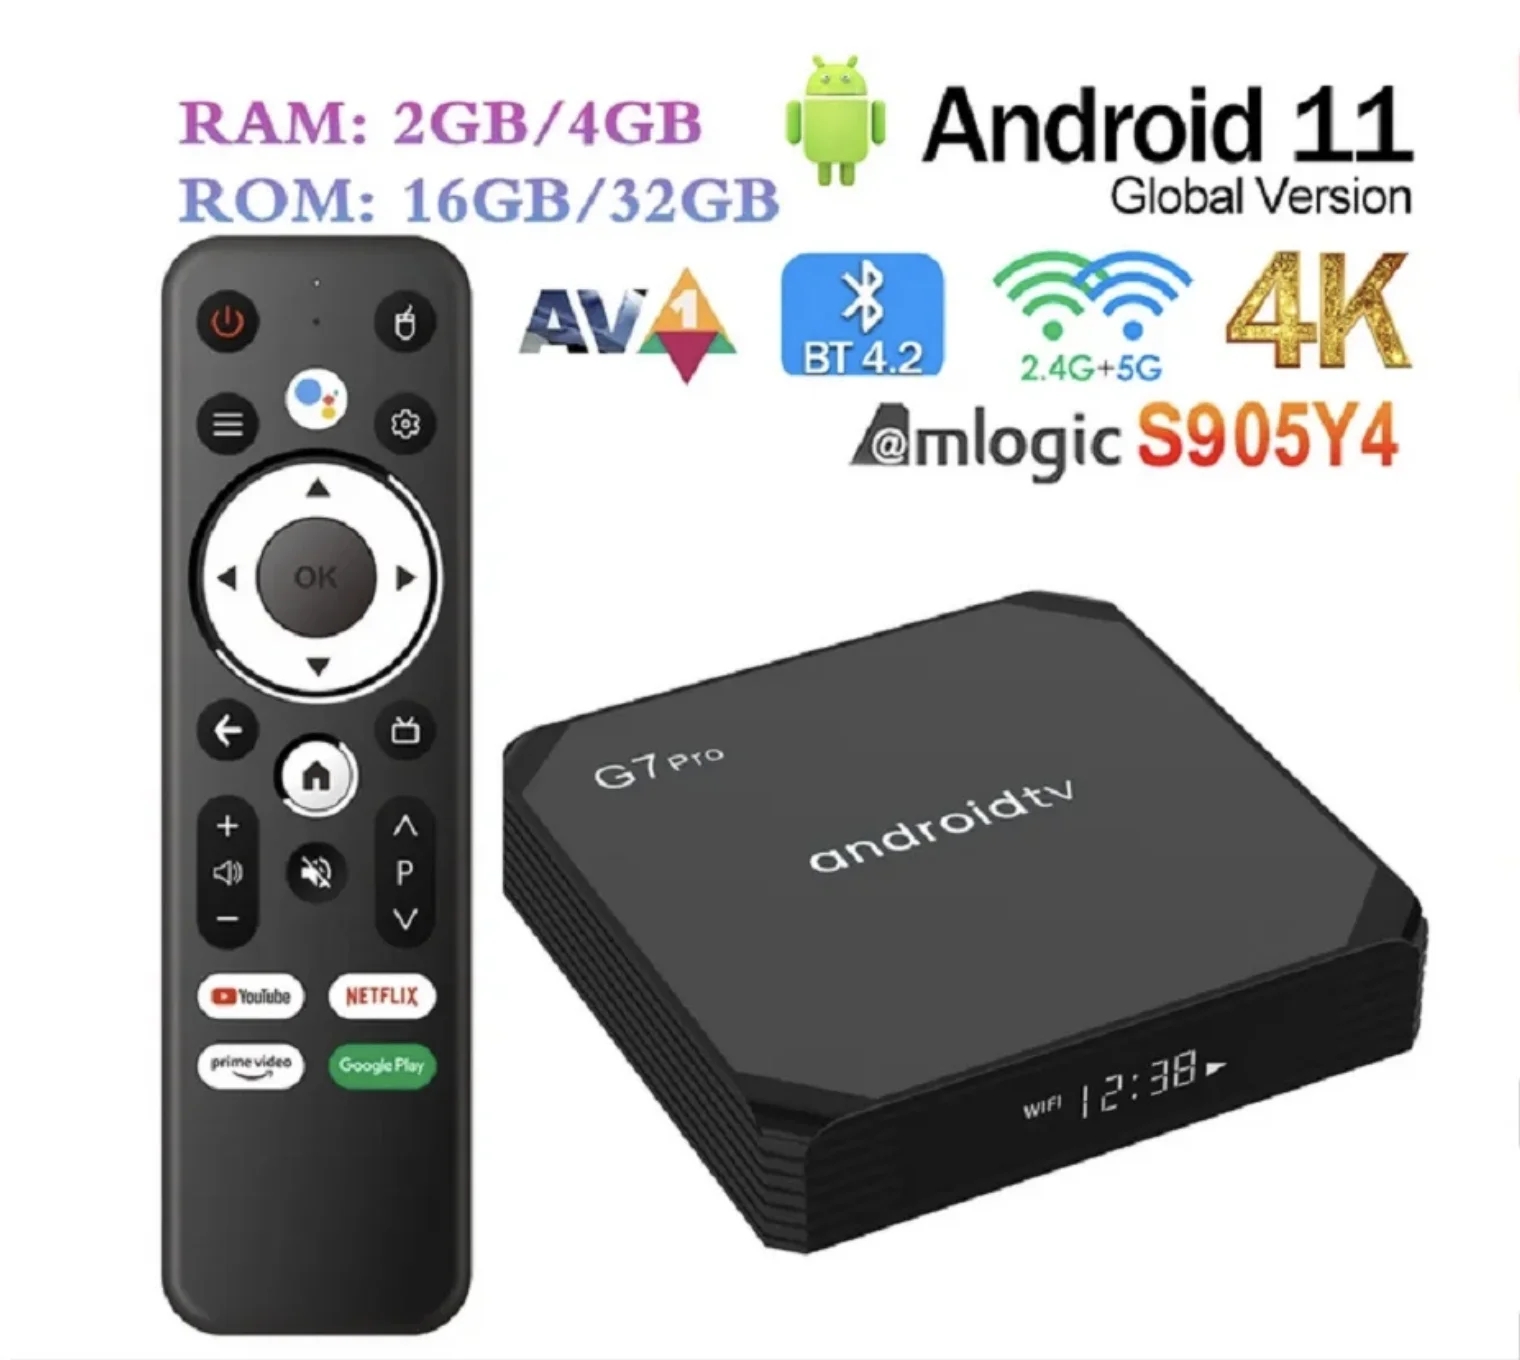 G7 Pro Smart ATV Android 11 TV Box Amlogic S905Y4 2GB 16GB / 4GB 32GB BT AVI 2.4G / 5G WiFi 4K HDR Media Player